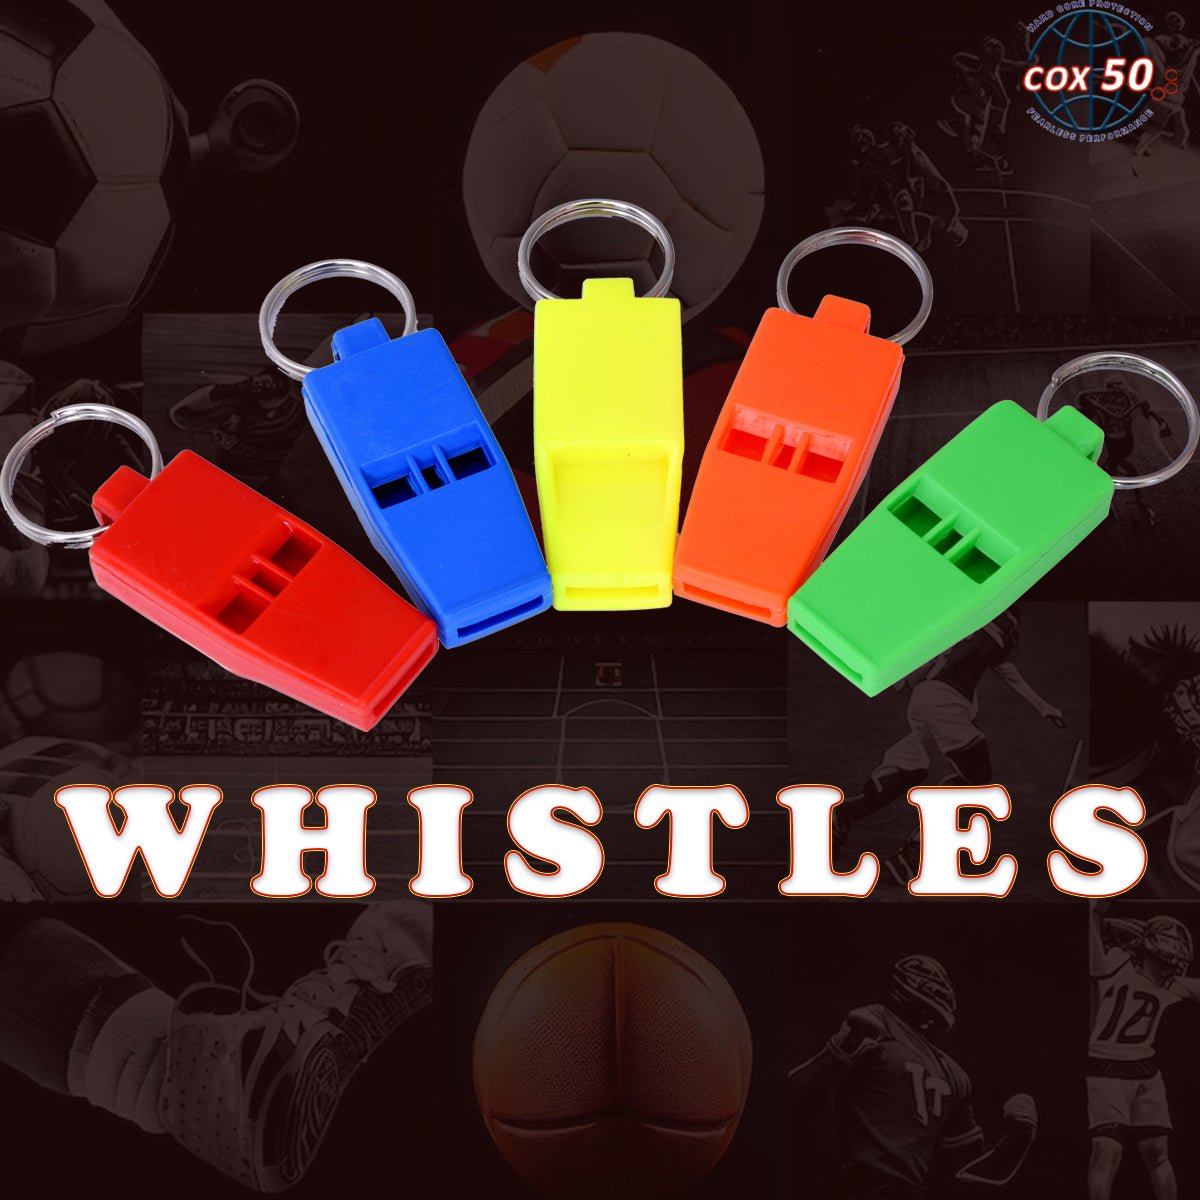 Cox50 Whistle 